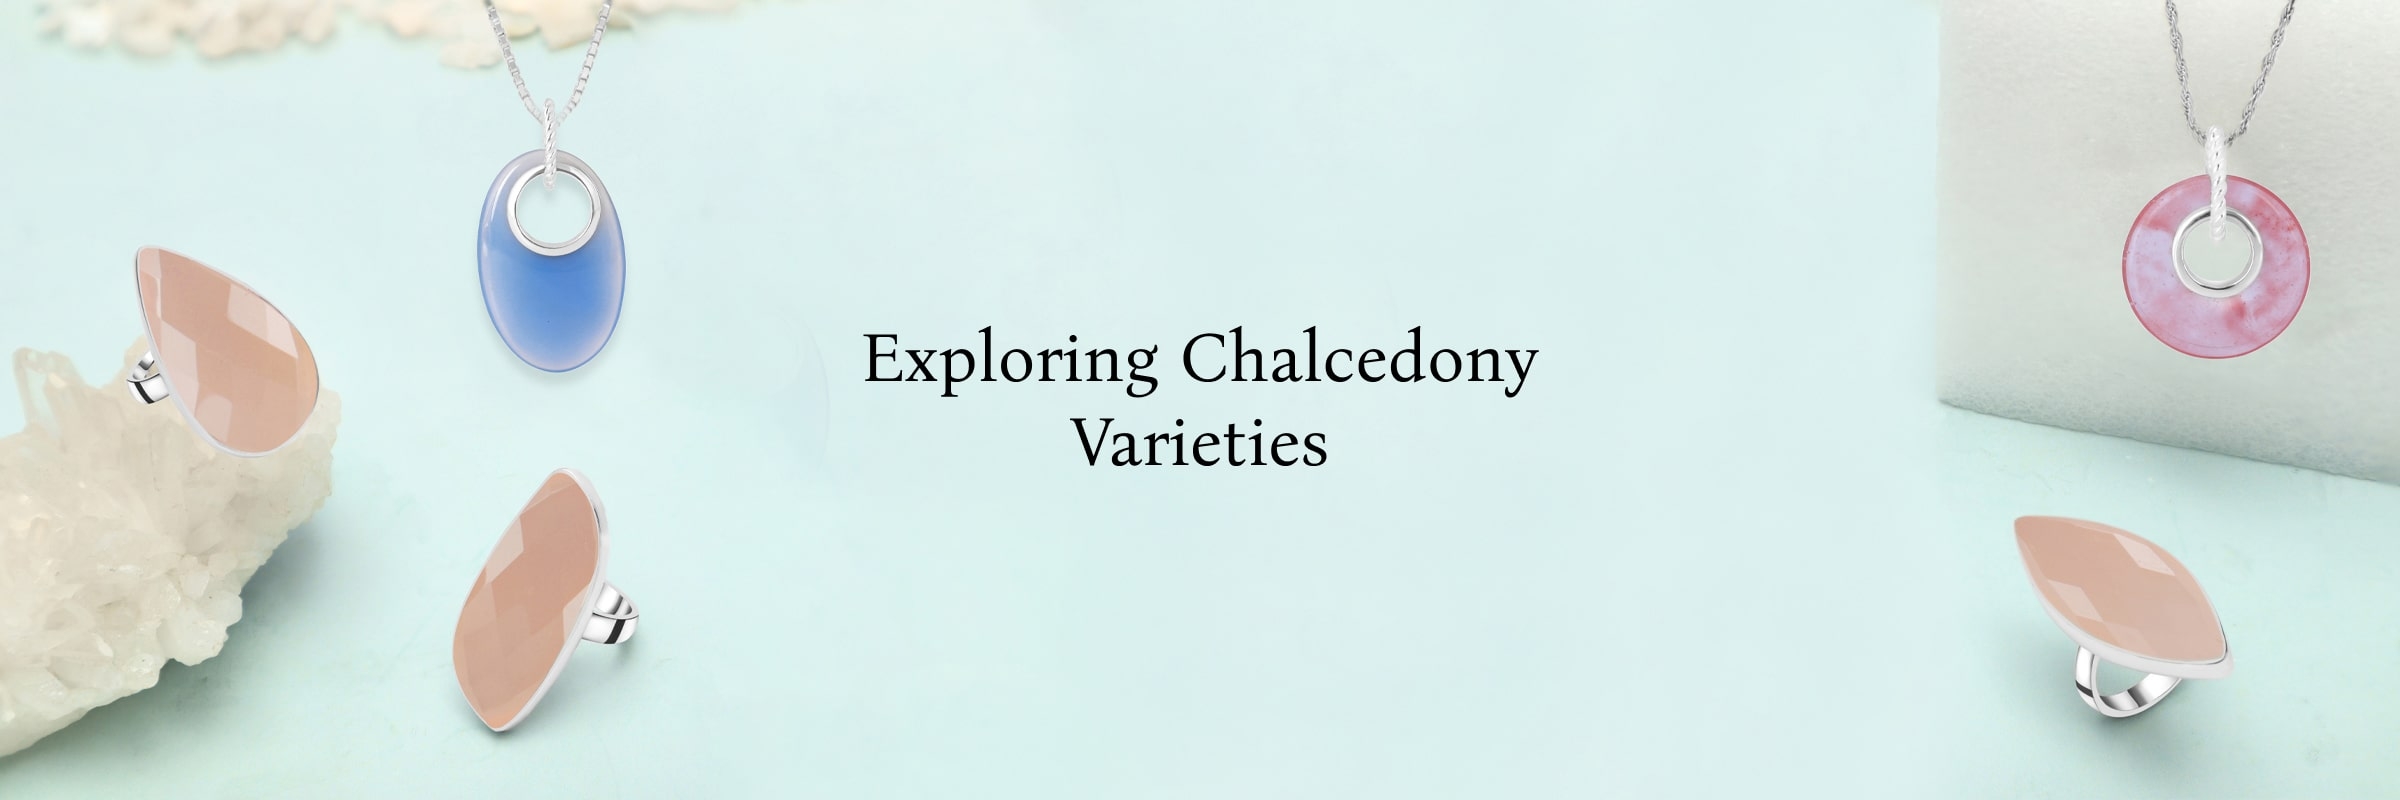 Types of Chalcedony